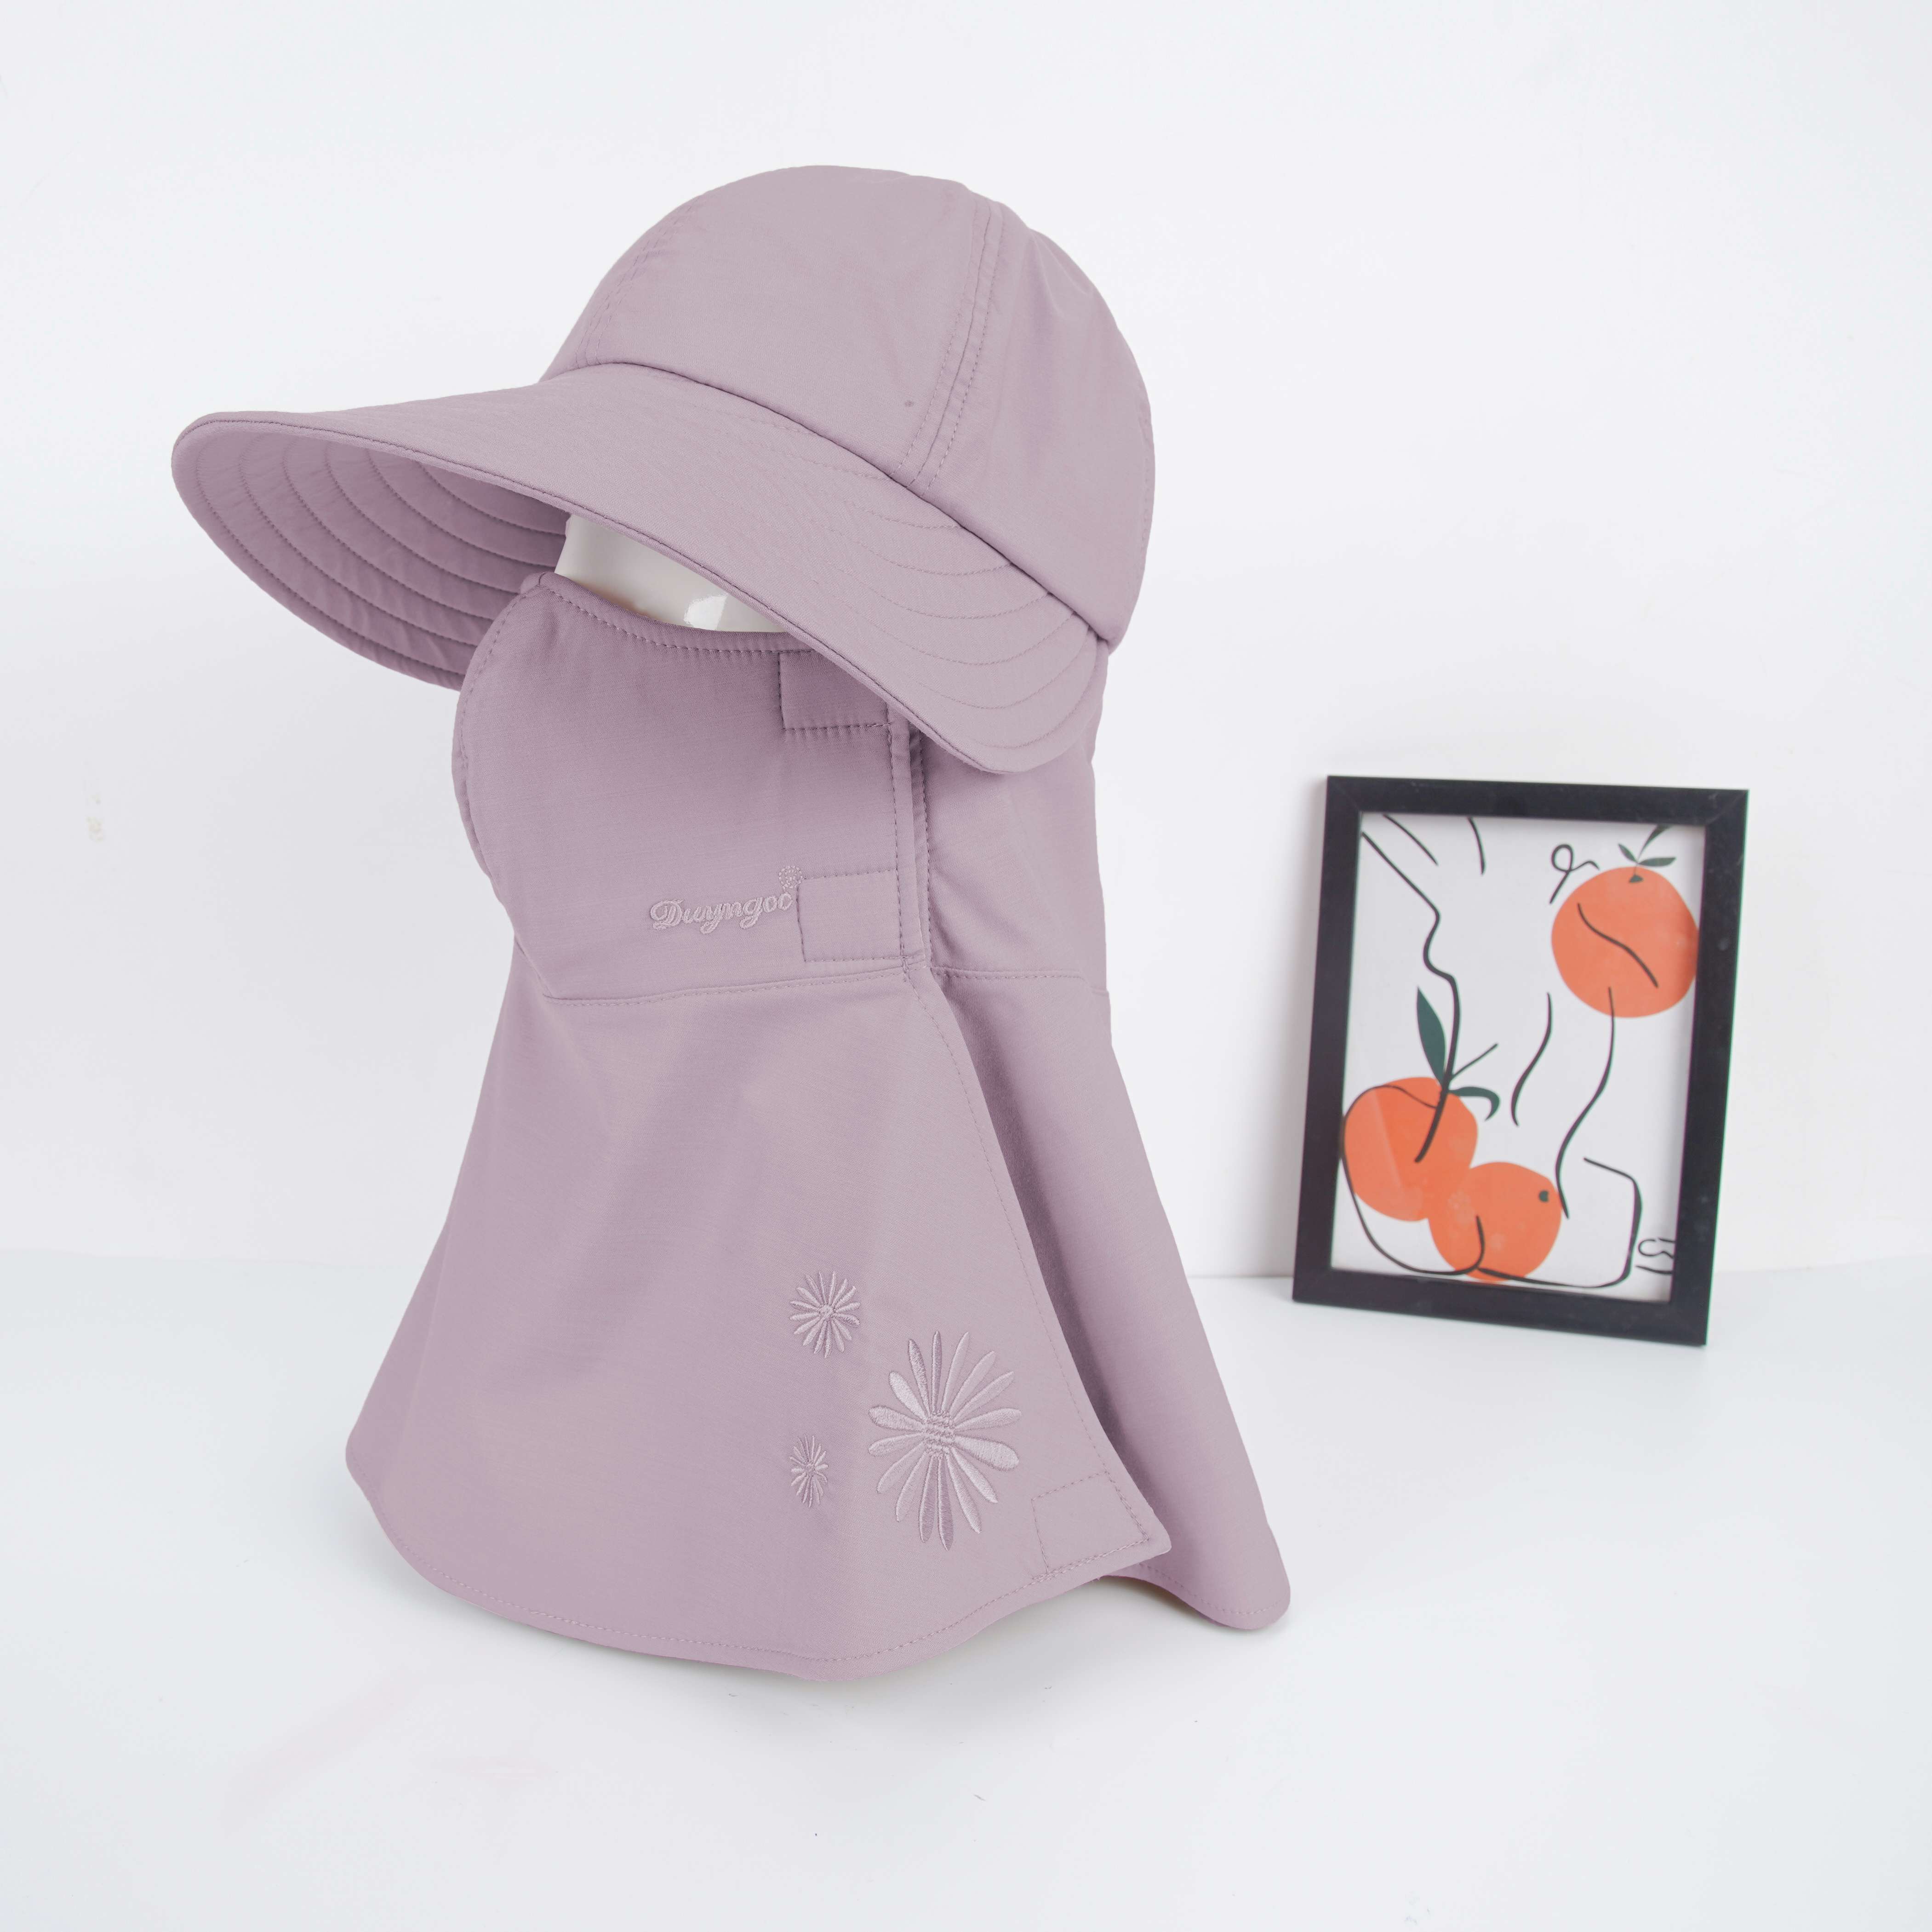 (MẪU MỚI) Mũ nón chống nắng 3n1 đa năng kèm khẩu trang cao cấp Duy Ngọc chất liệu vải BAMBOO cao cấp - Nón thiết kế sang trọng vải mềm mịn - SỐ LƯỢNG CÓ HẠN (3087)